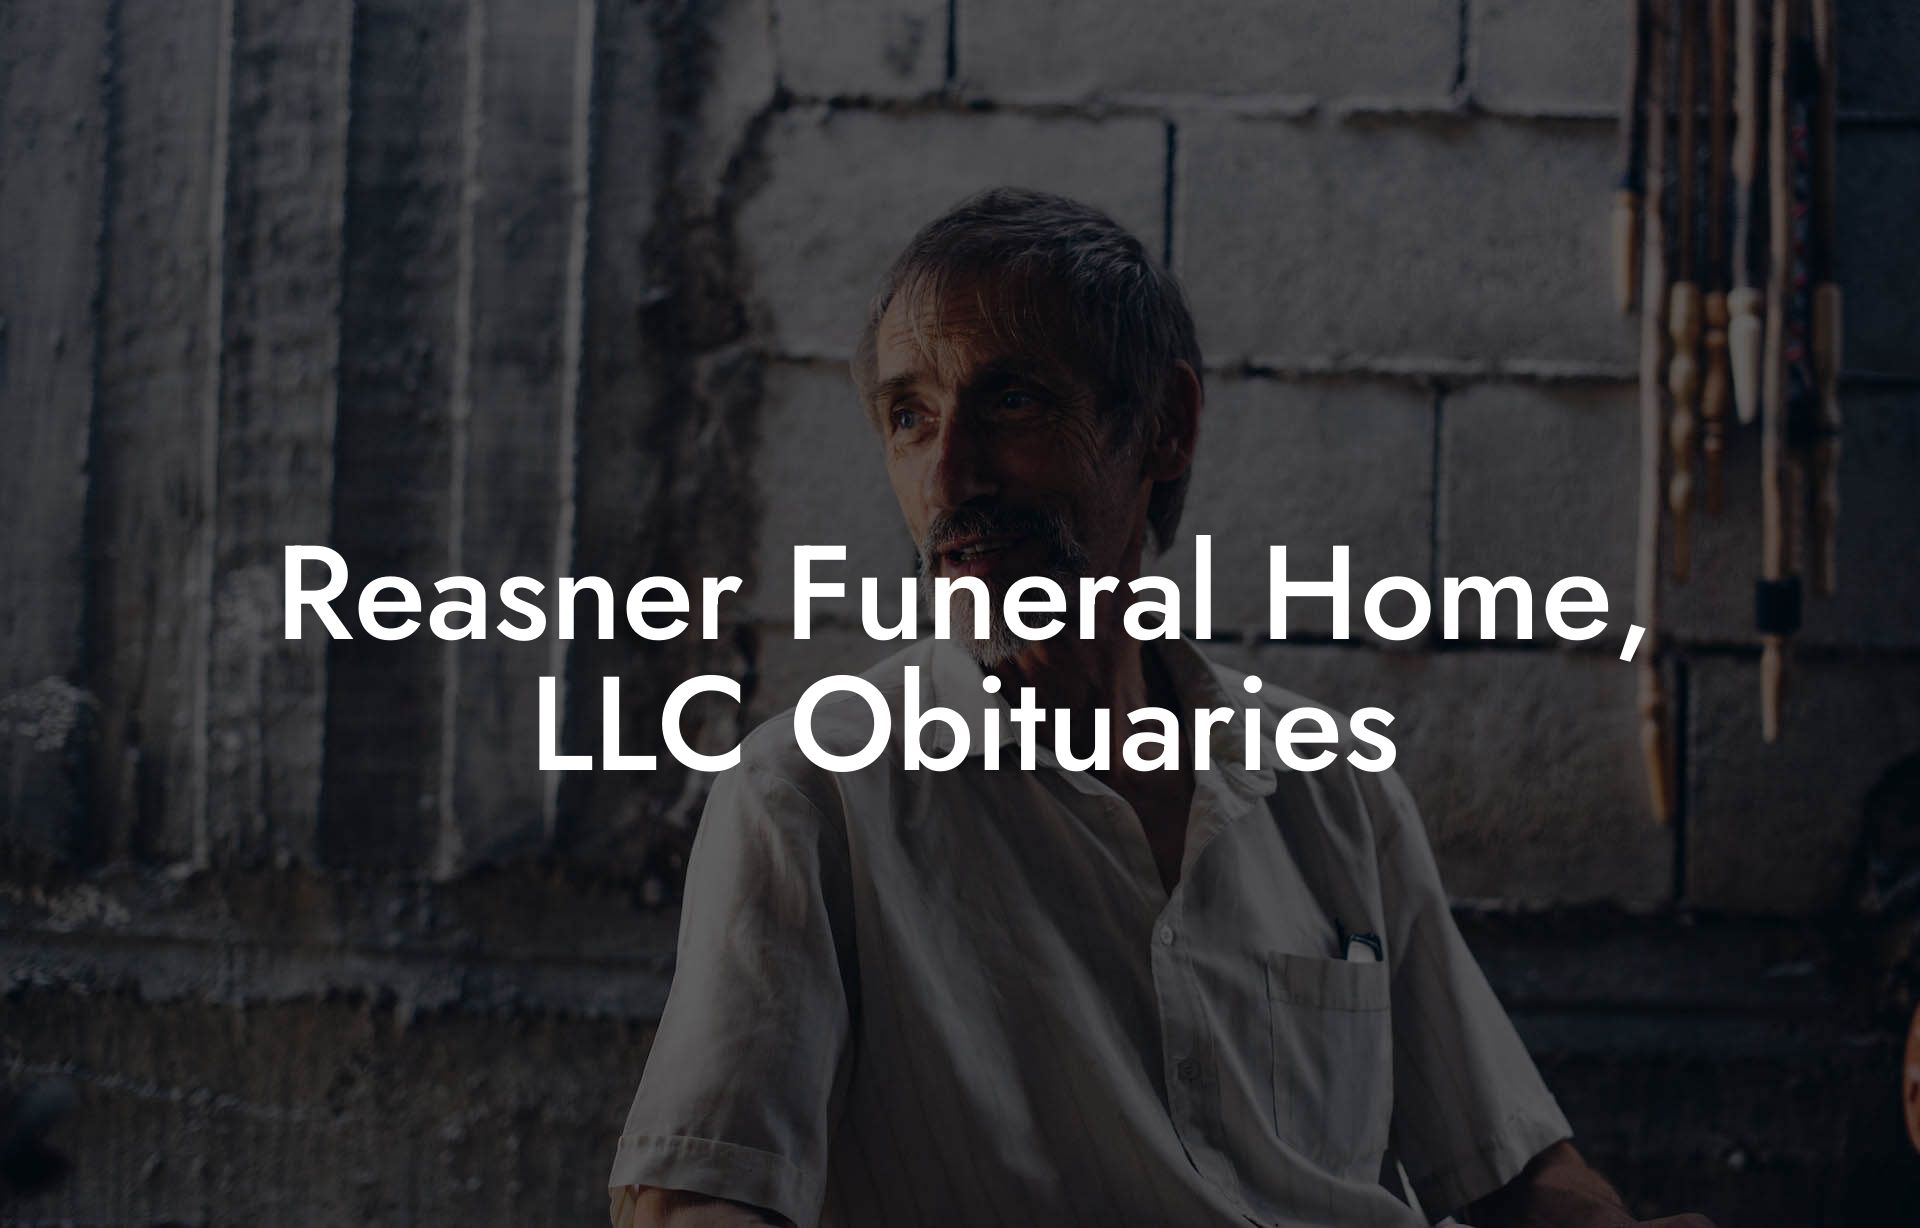 Reasner Funeral Home, LLC Obituaries